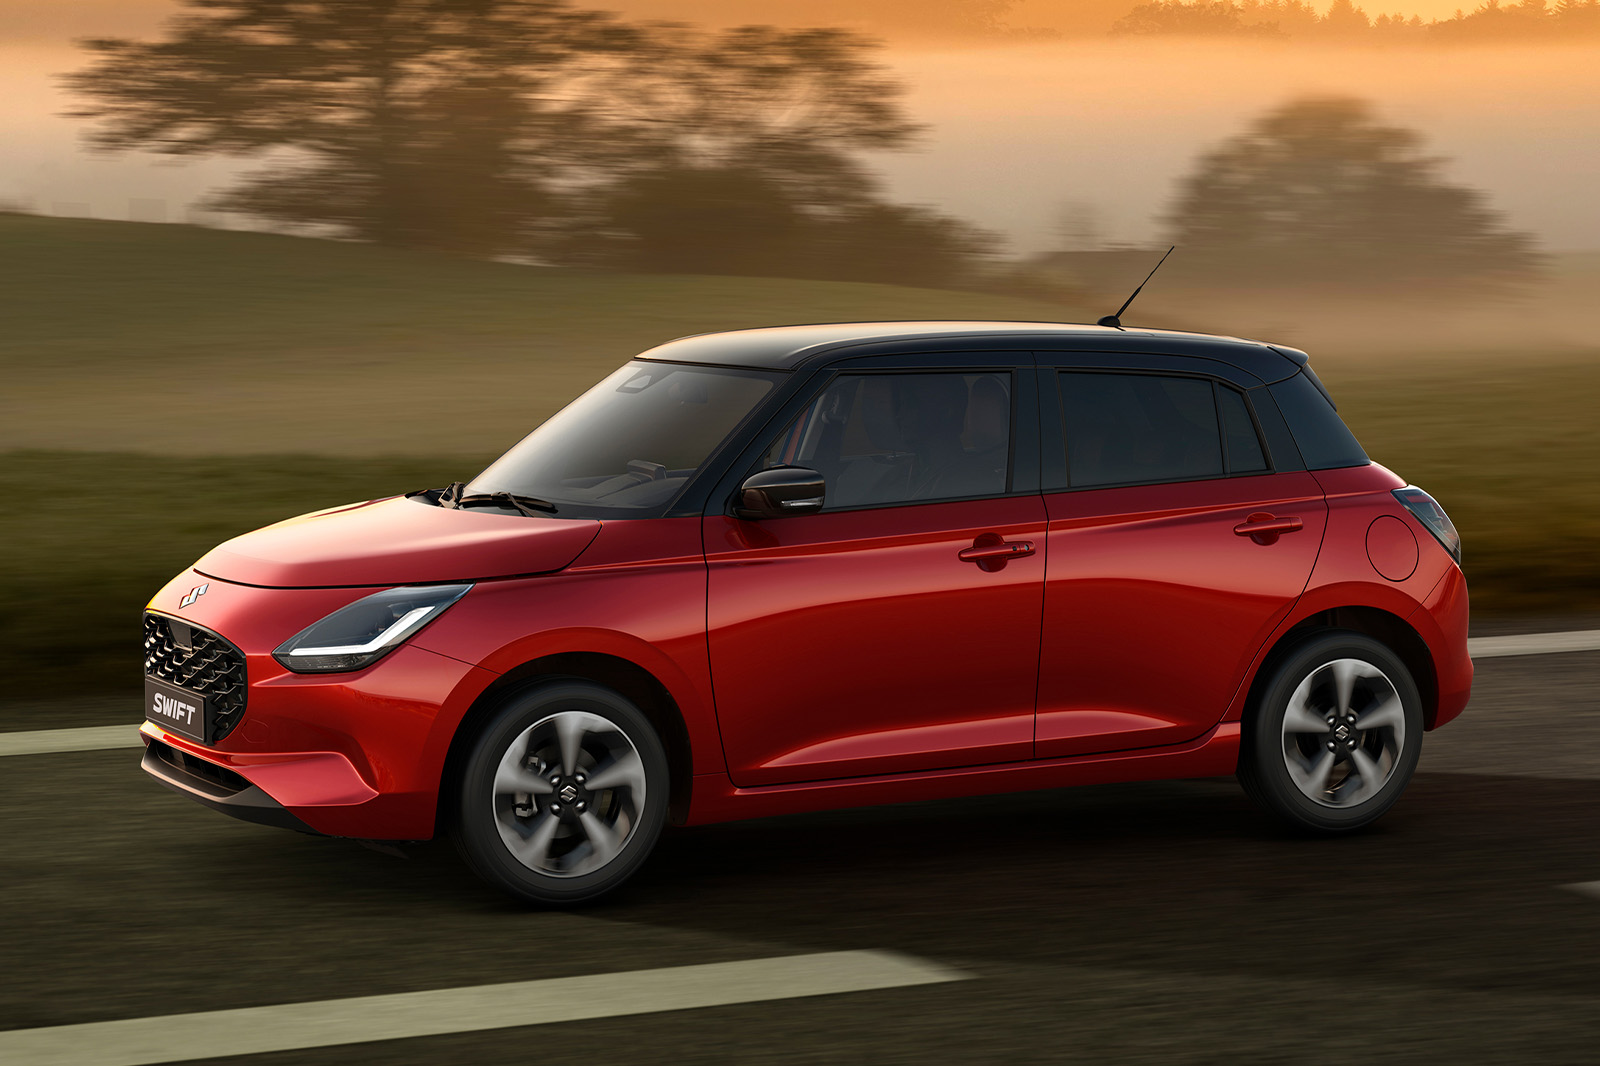 New Suzuki Swift gains design updates and updated infotainment